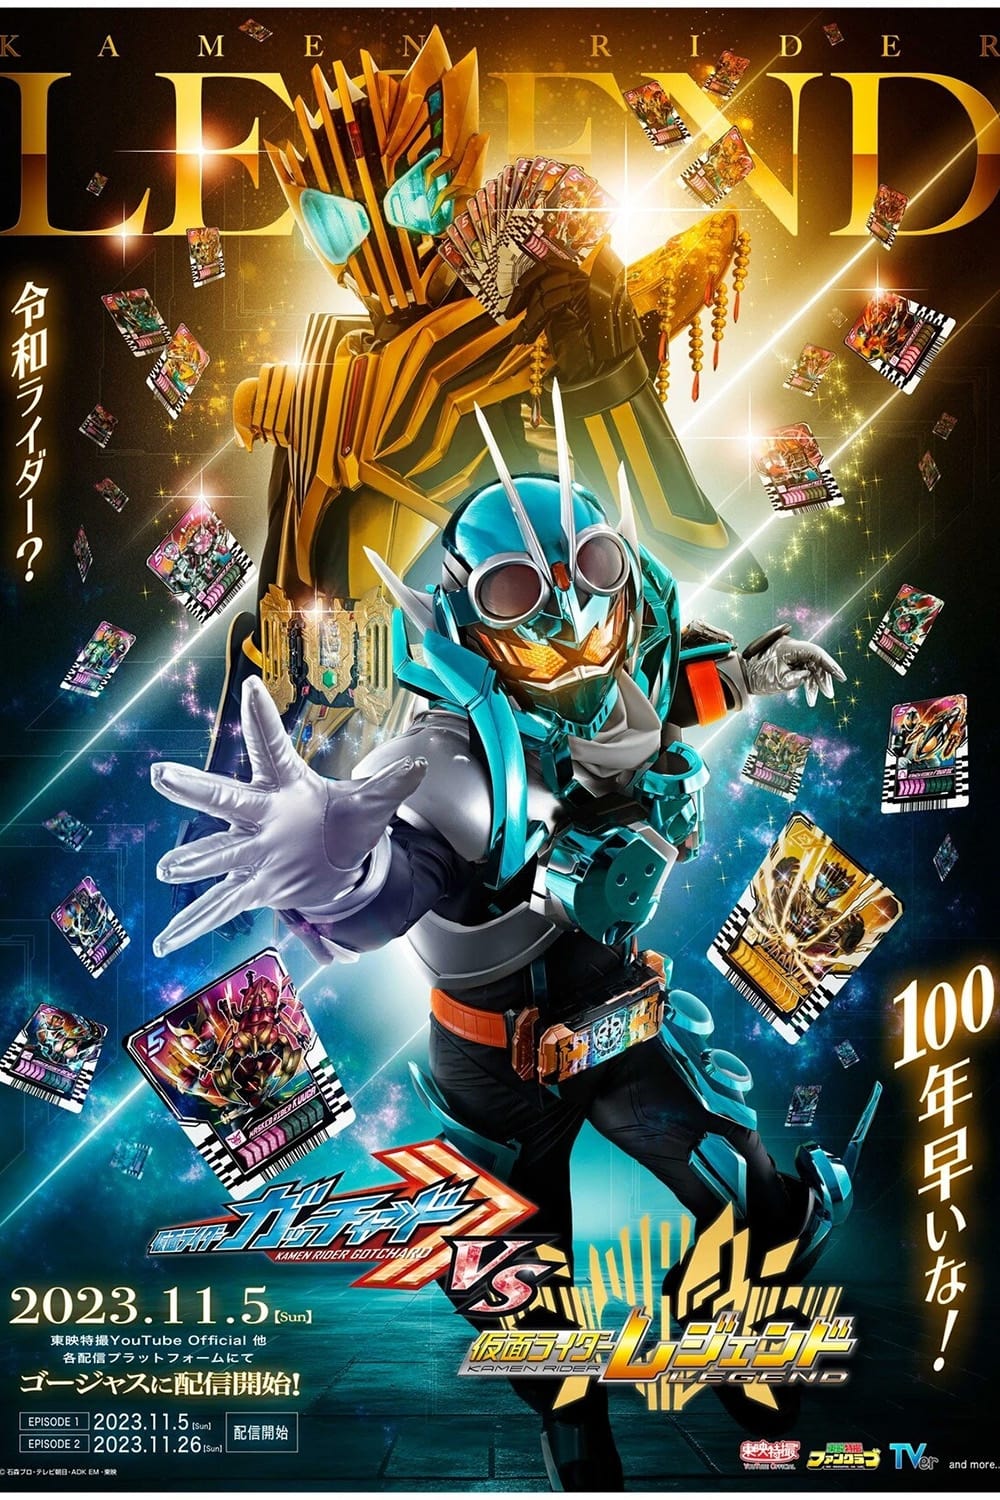 仮面ライダーガッチャードVS仮面ライダーレジェンド Kamen Rider Gotchard VS Kamen Rider Legend (Updated to EP19)